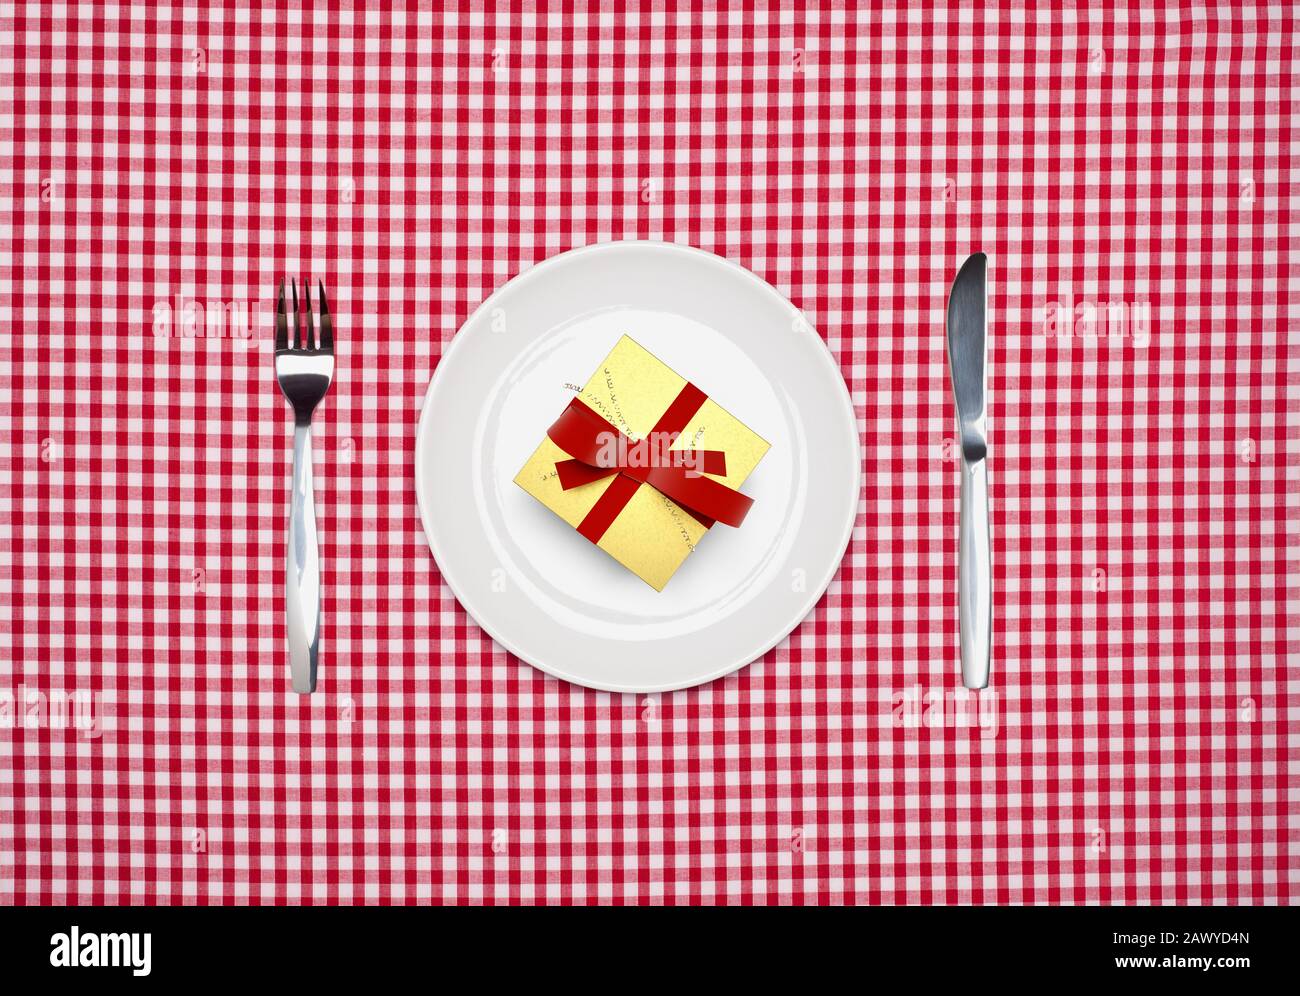 Repas surprise, une boîte cadeau emballée sur une plaque blanche ronde avec couteau et fourchette d'en haut sur une nappe Vichy rouge Banque D'Images